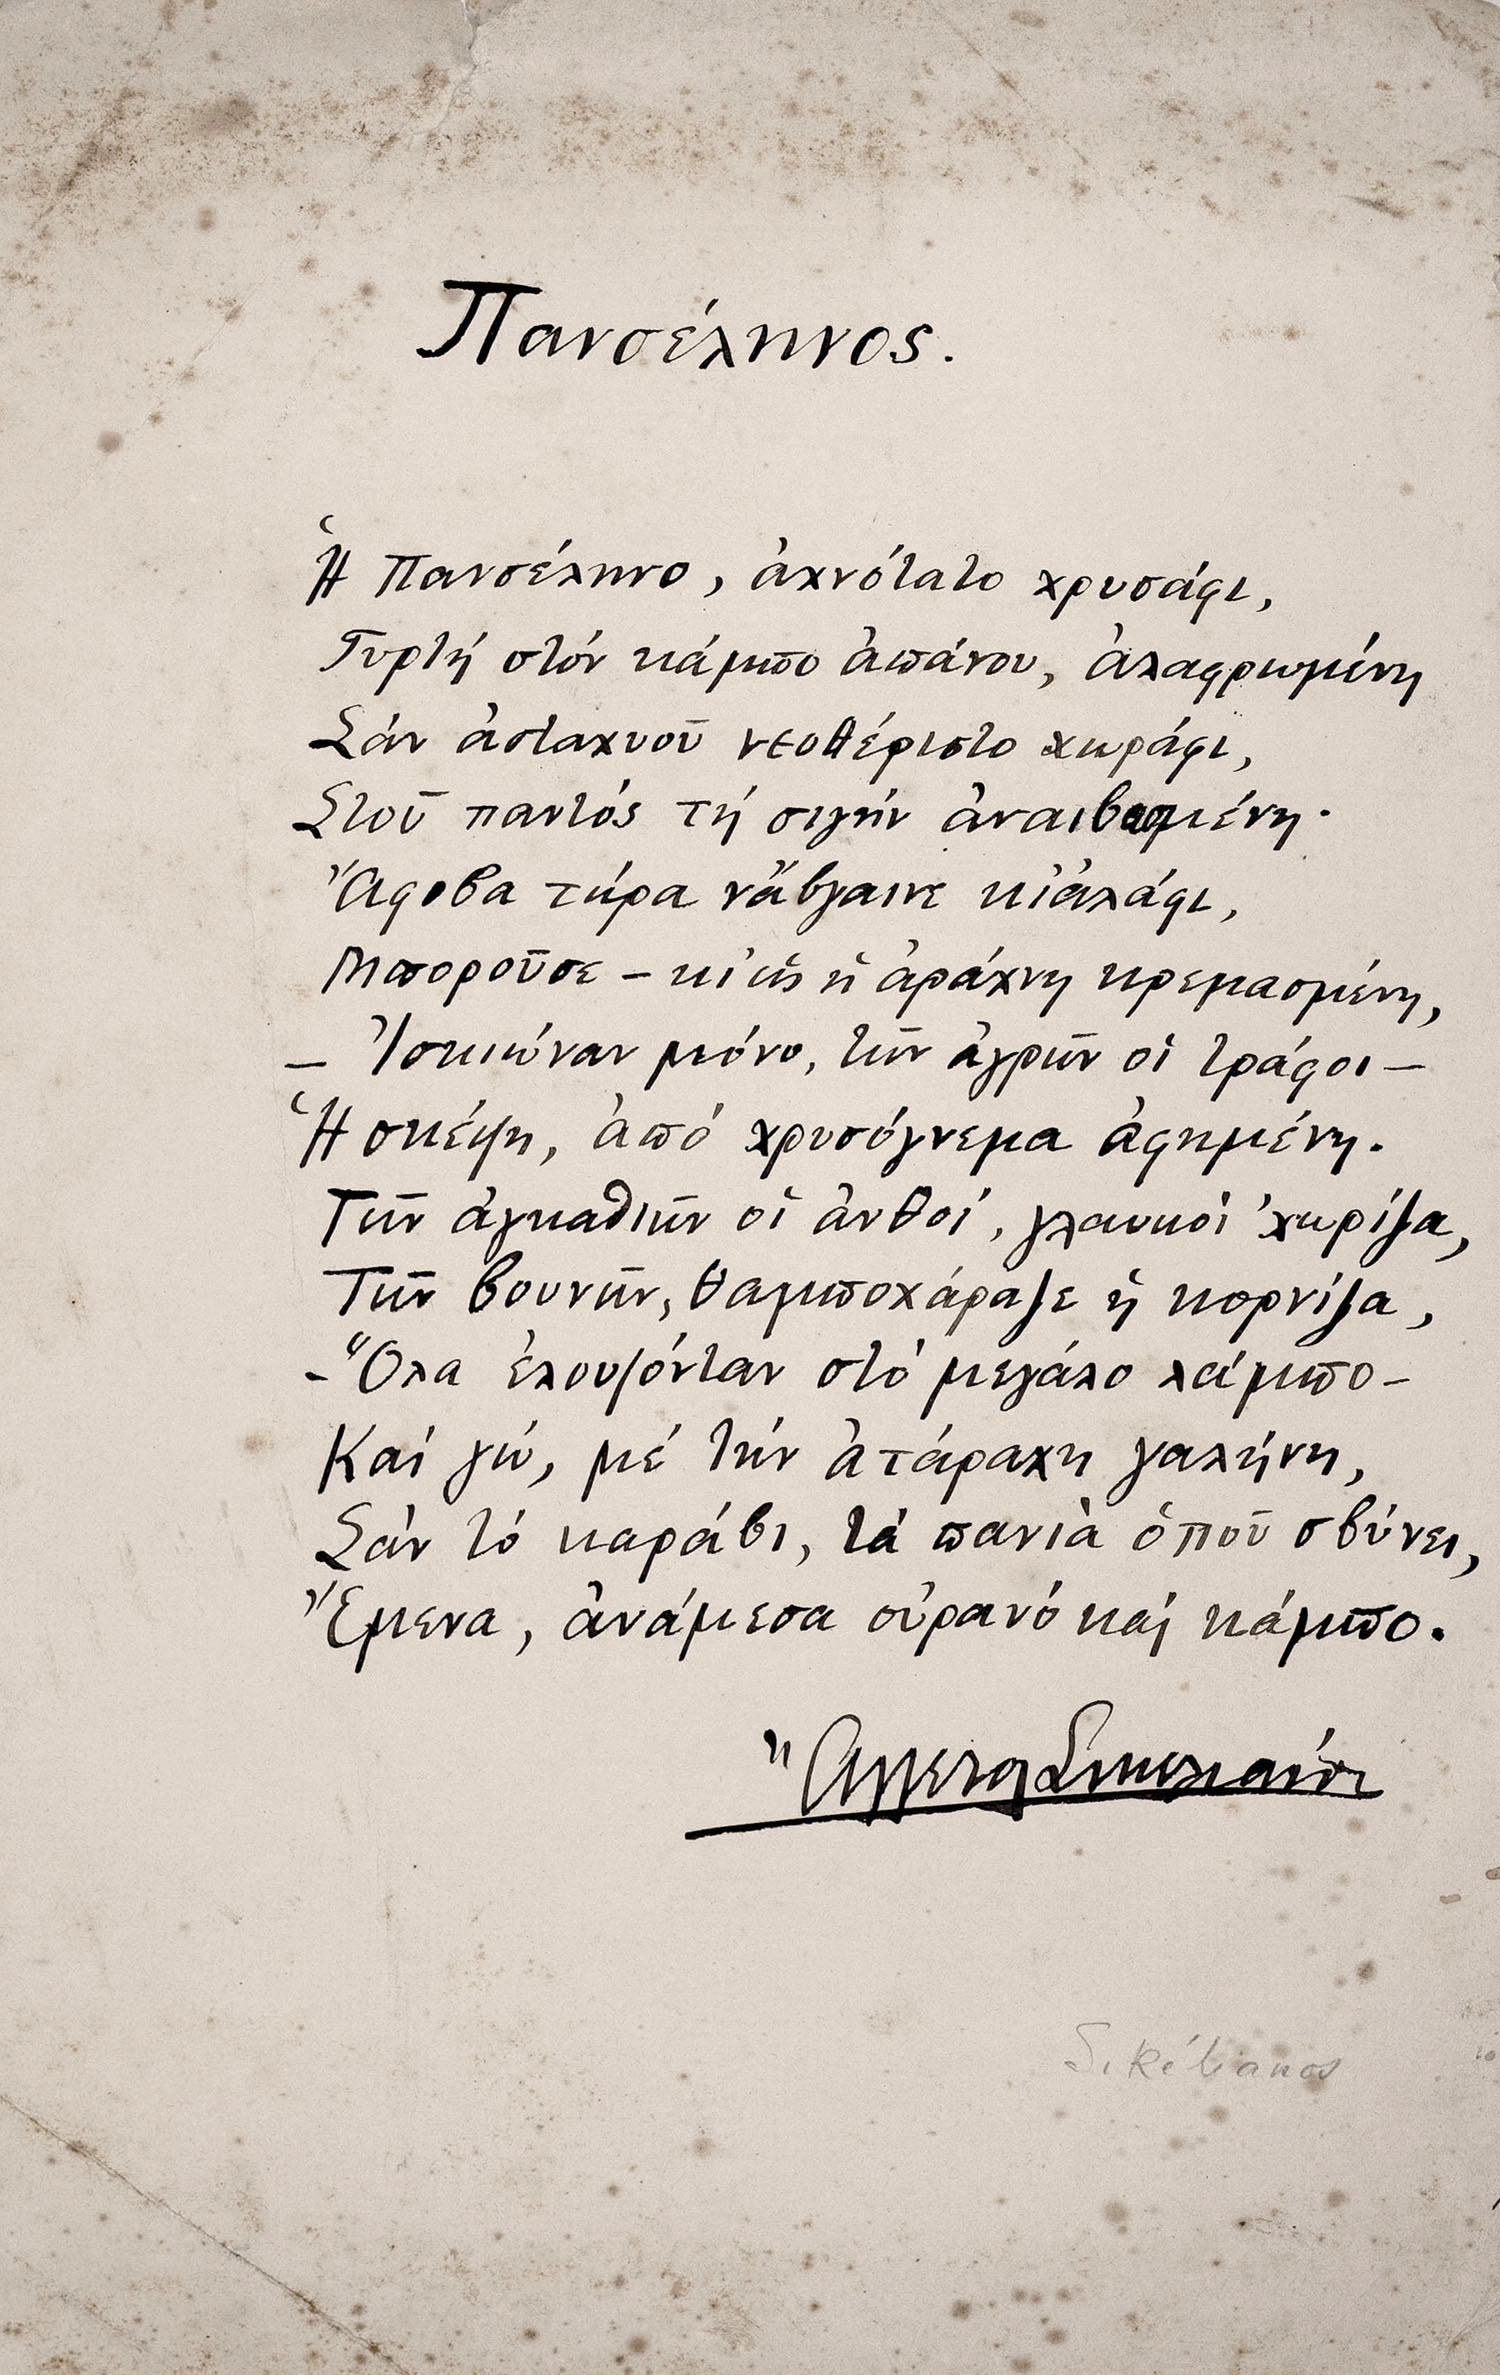 ΣΙΚΕΛΙΑΝΟΣ, Άγγελος, 1884-1951, ποιητής.